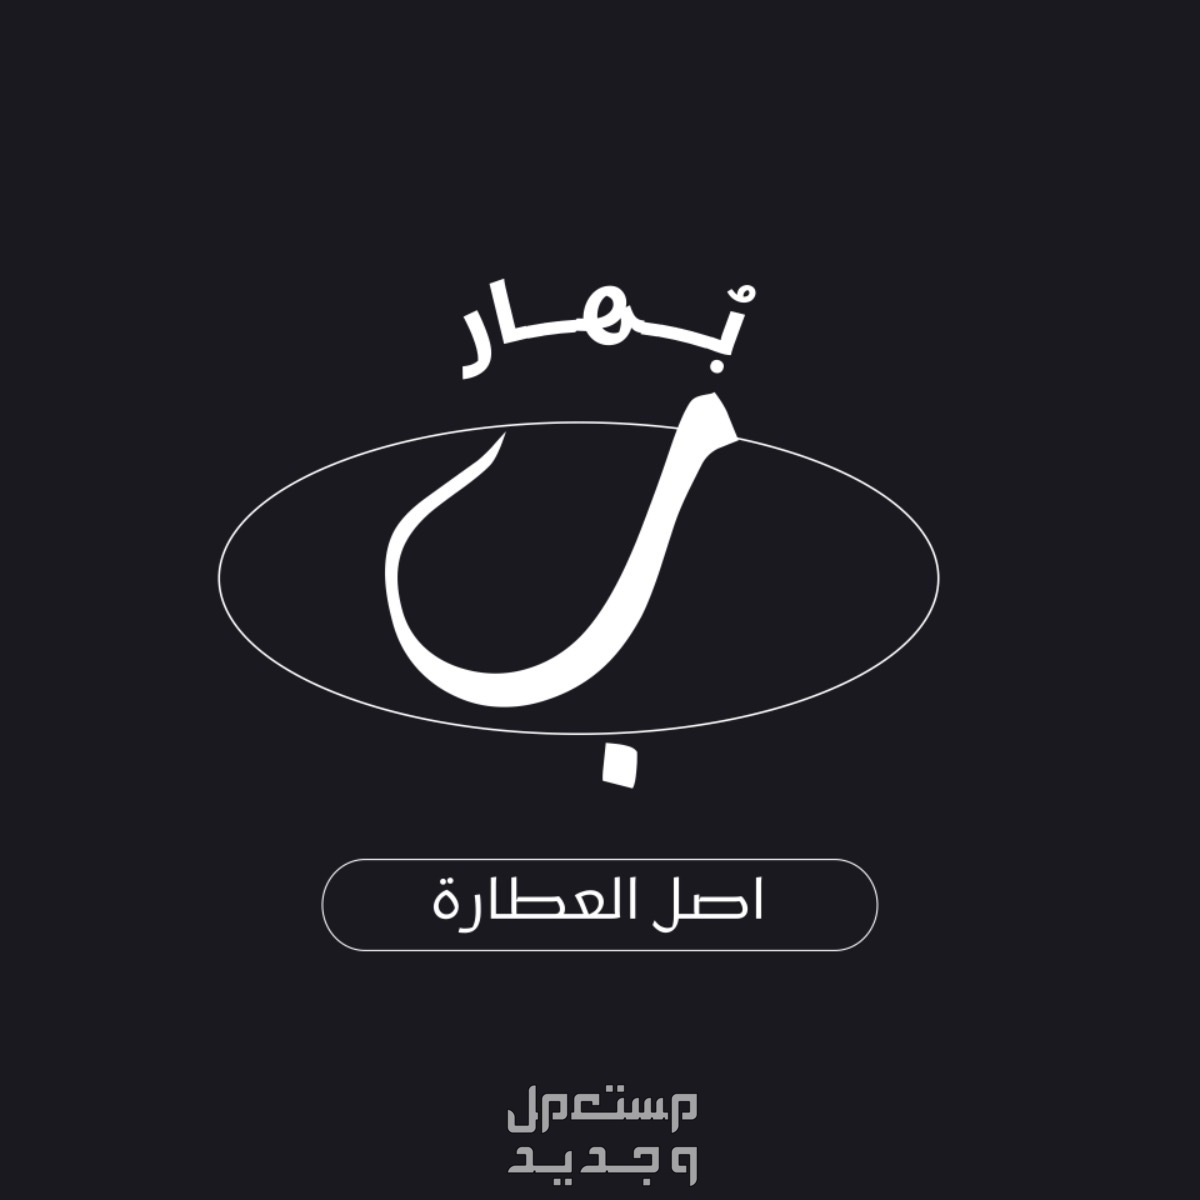 تصميم شعارات وكروت زواج وشهادات و cv لوقو براند عطارة